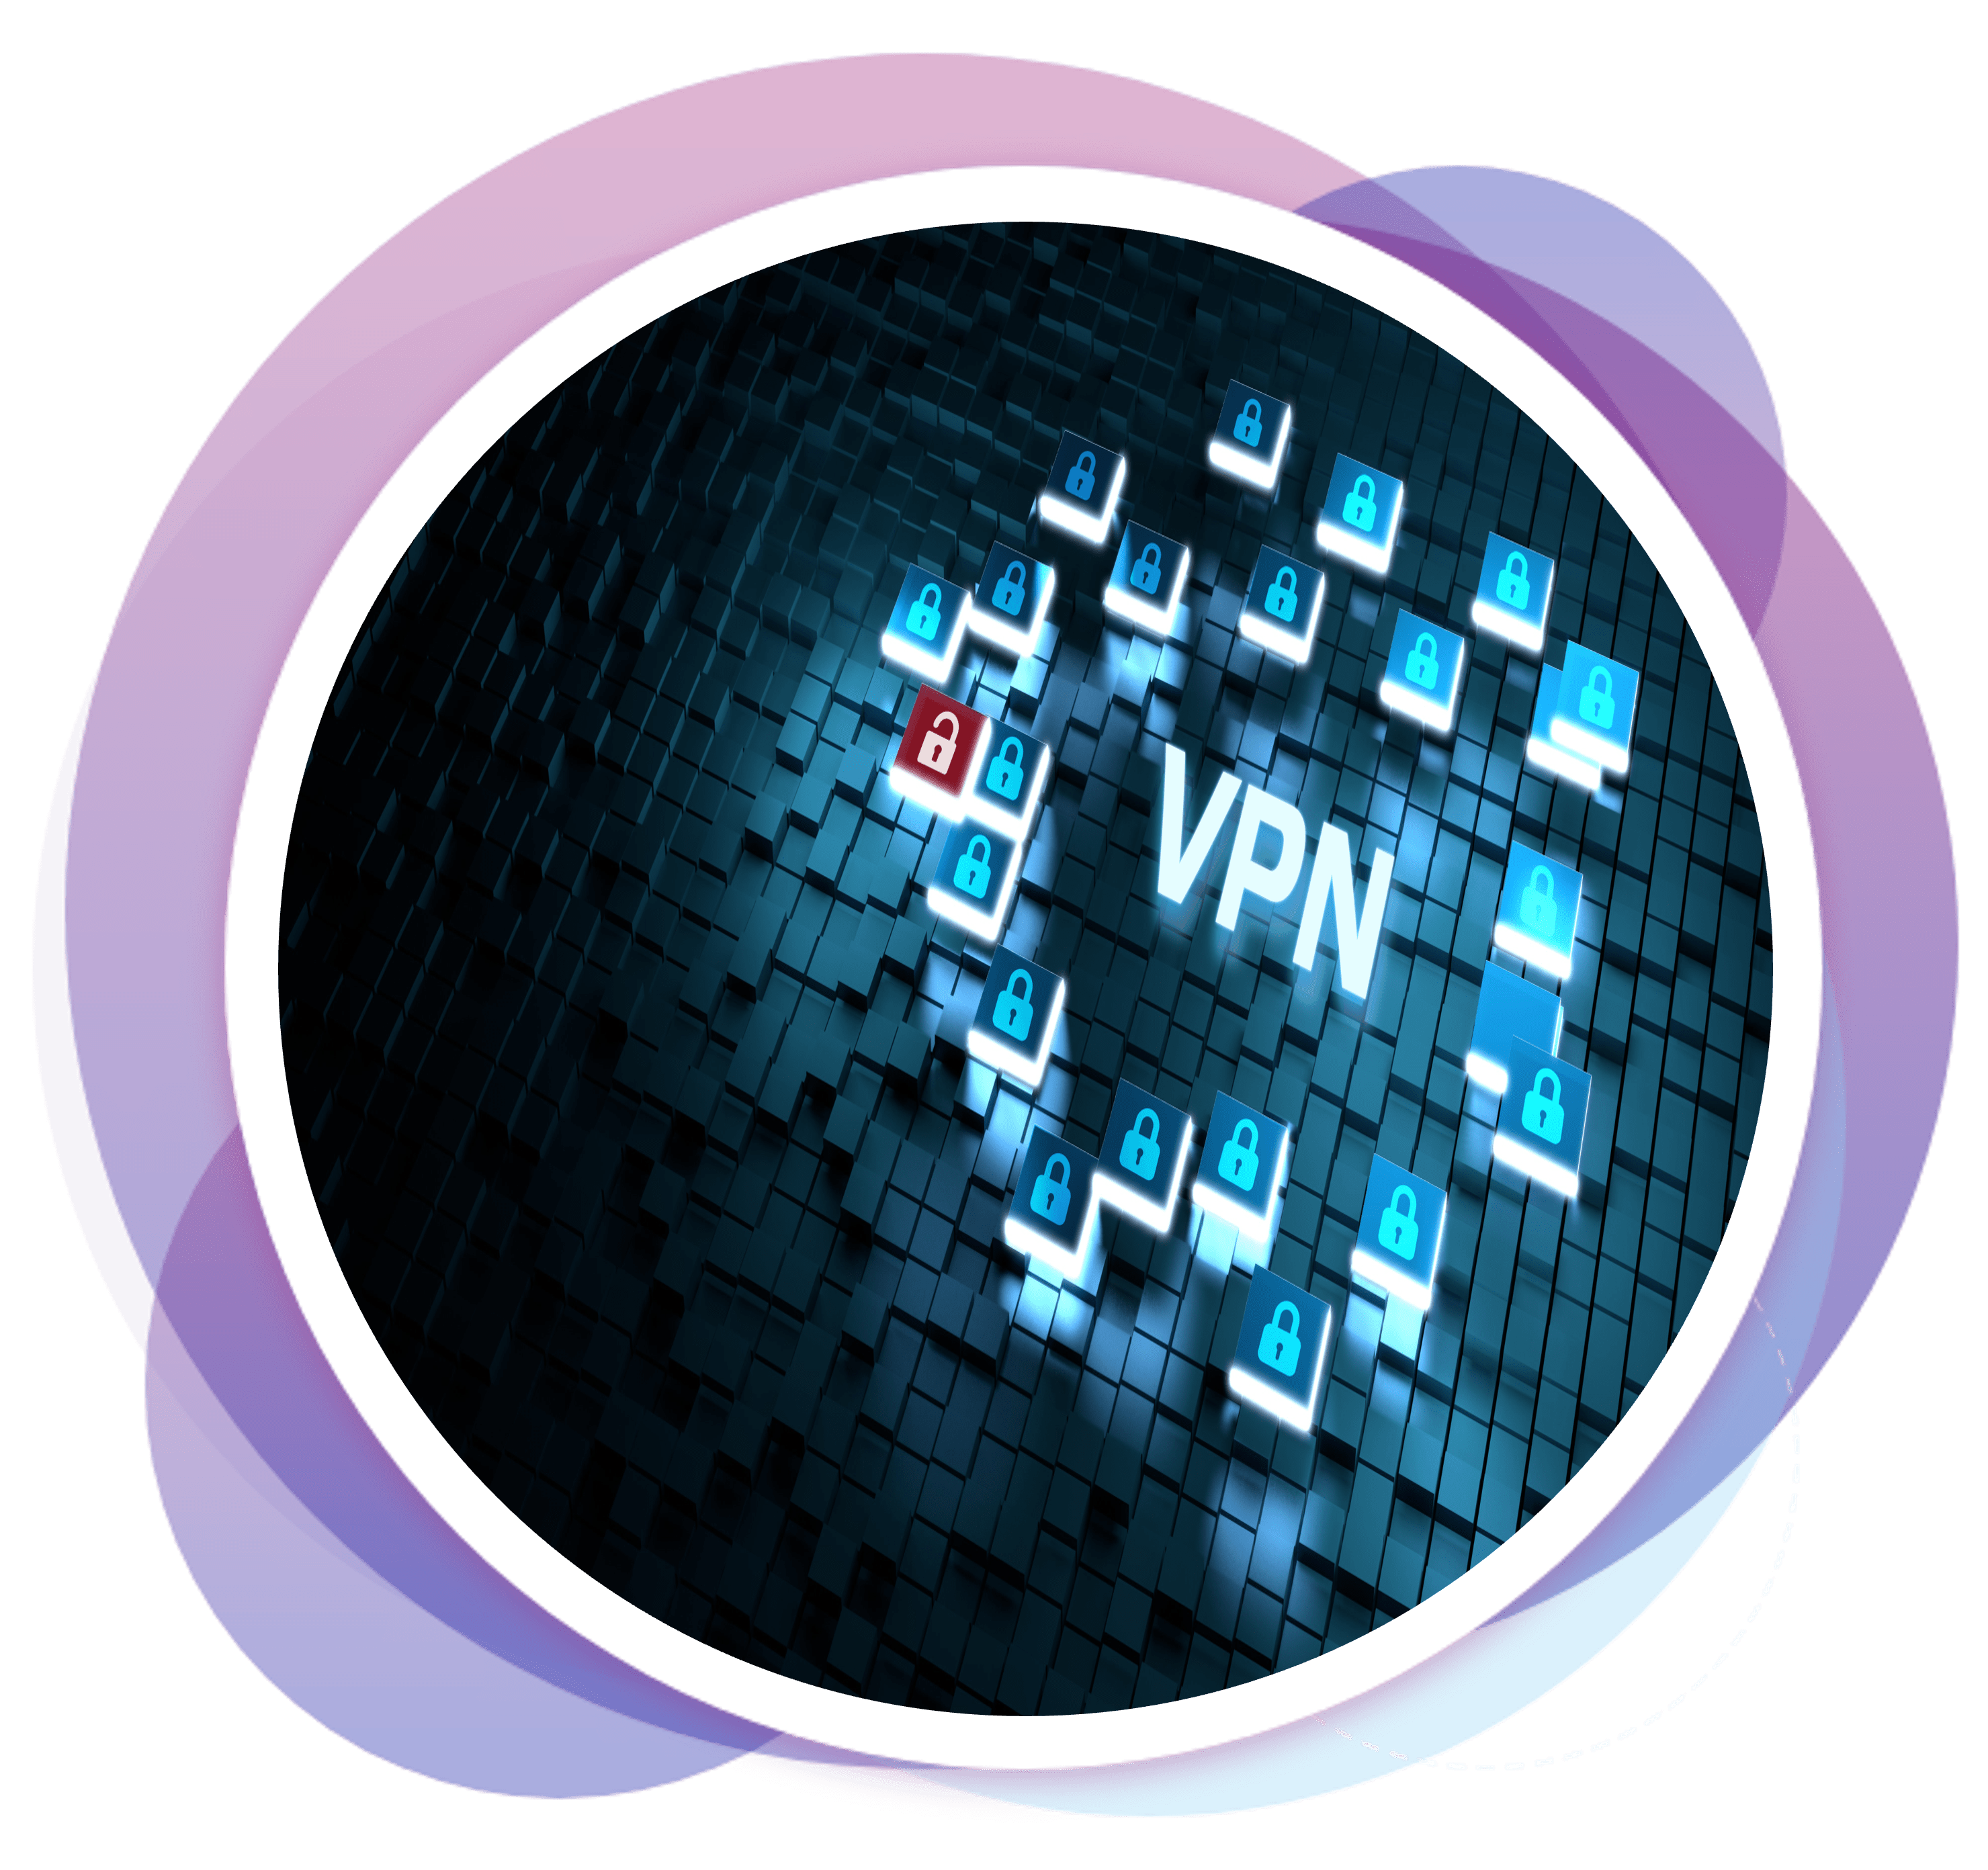 VPN technology cctv systems